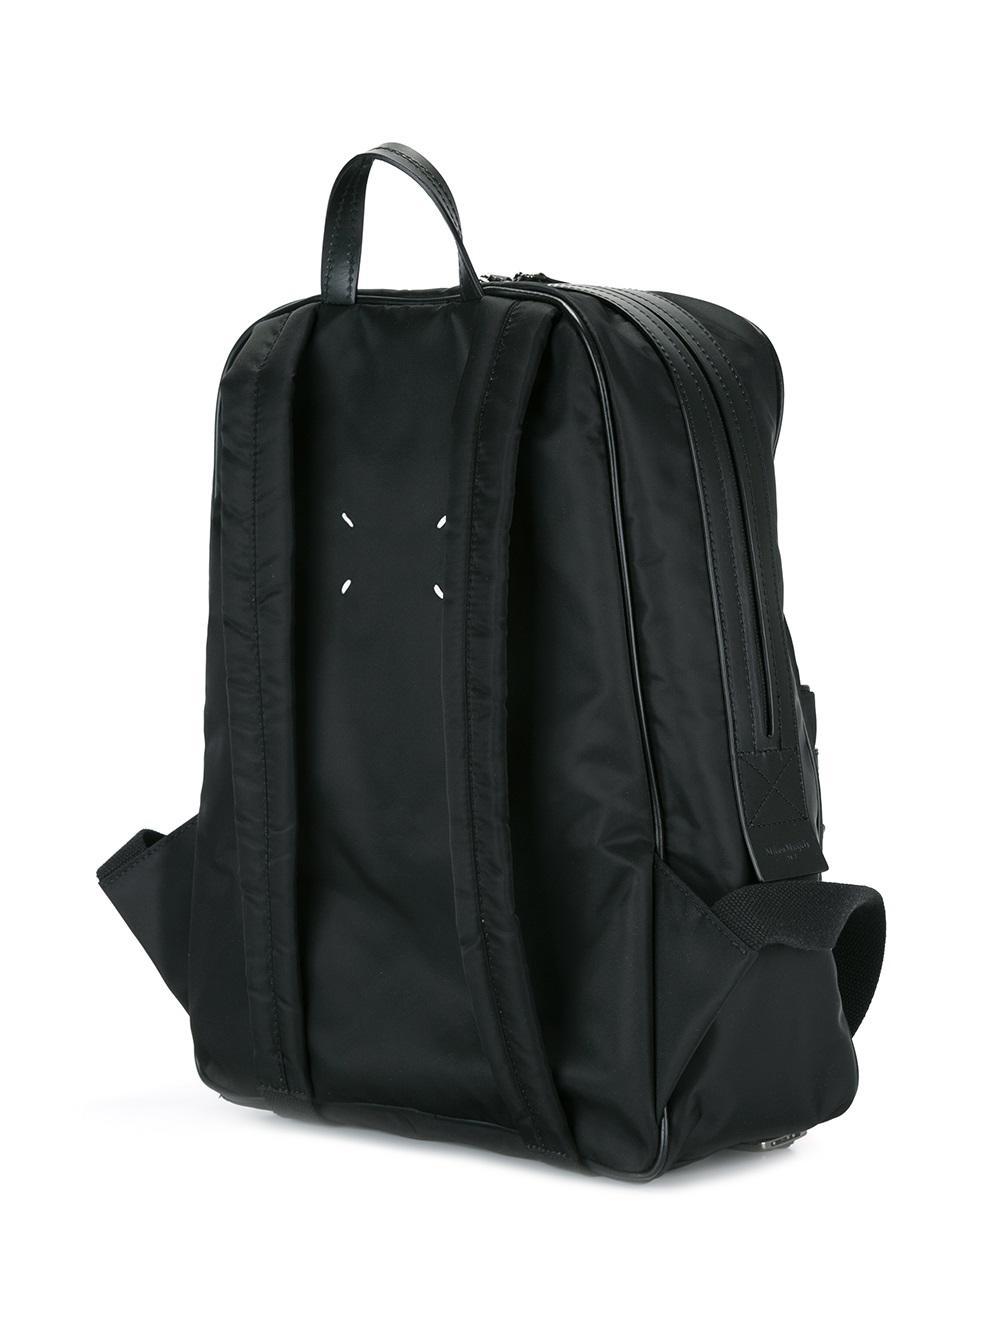 Maison margiela Zip Backpack in Black for Men | Lyst